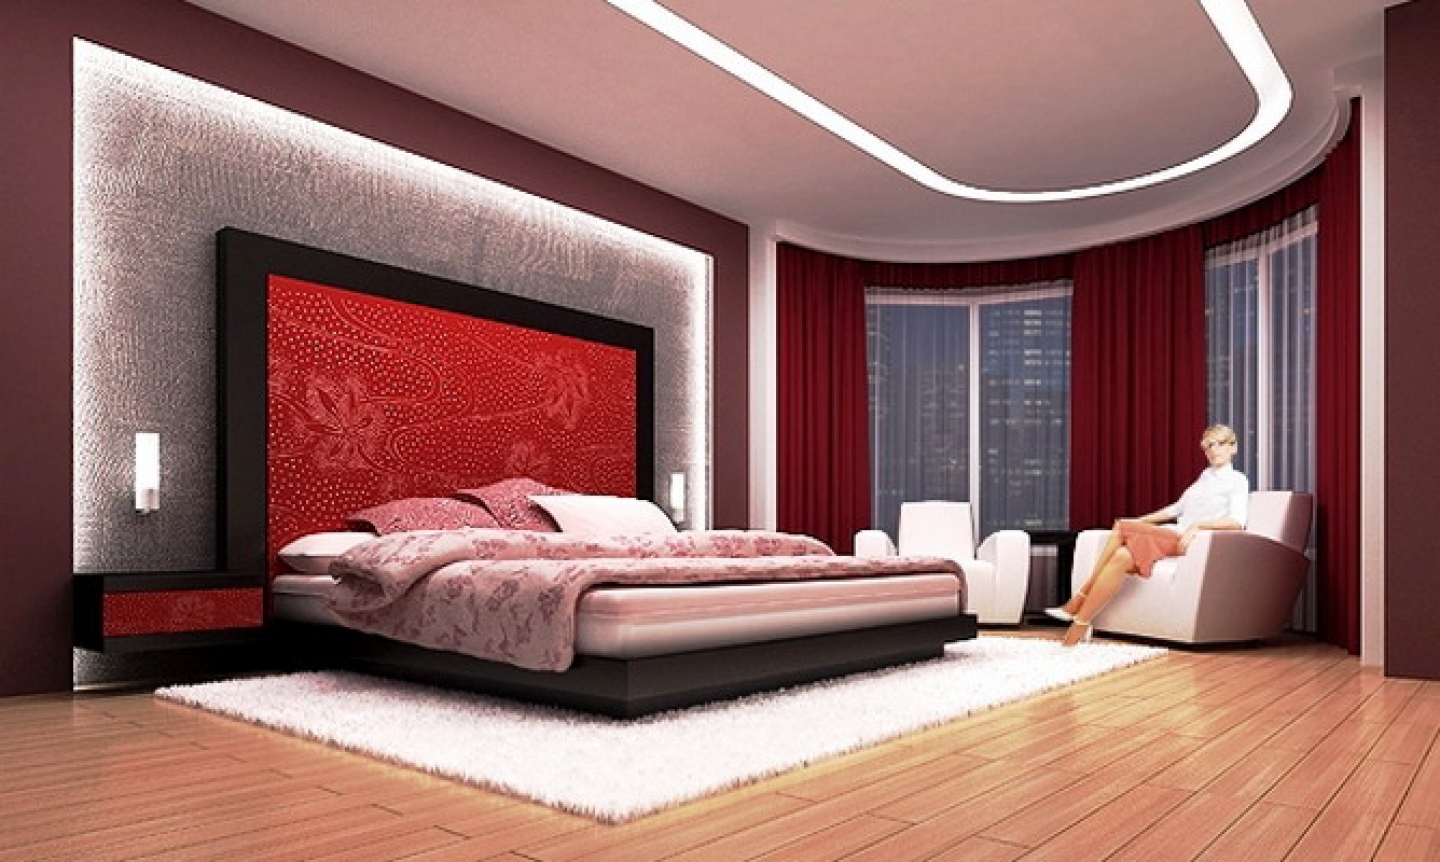 The 20 best bedroom design ideas of 2014